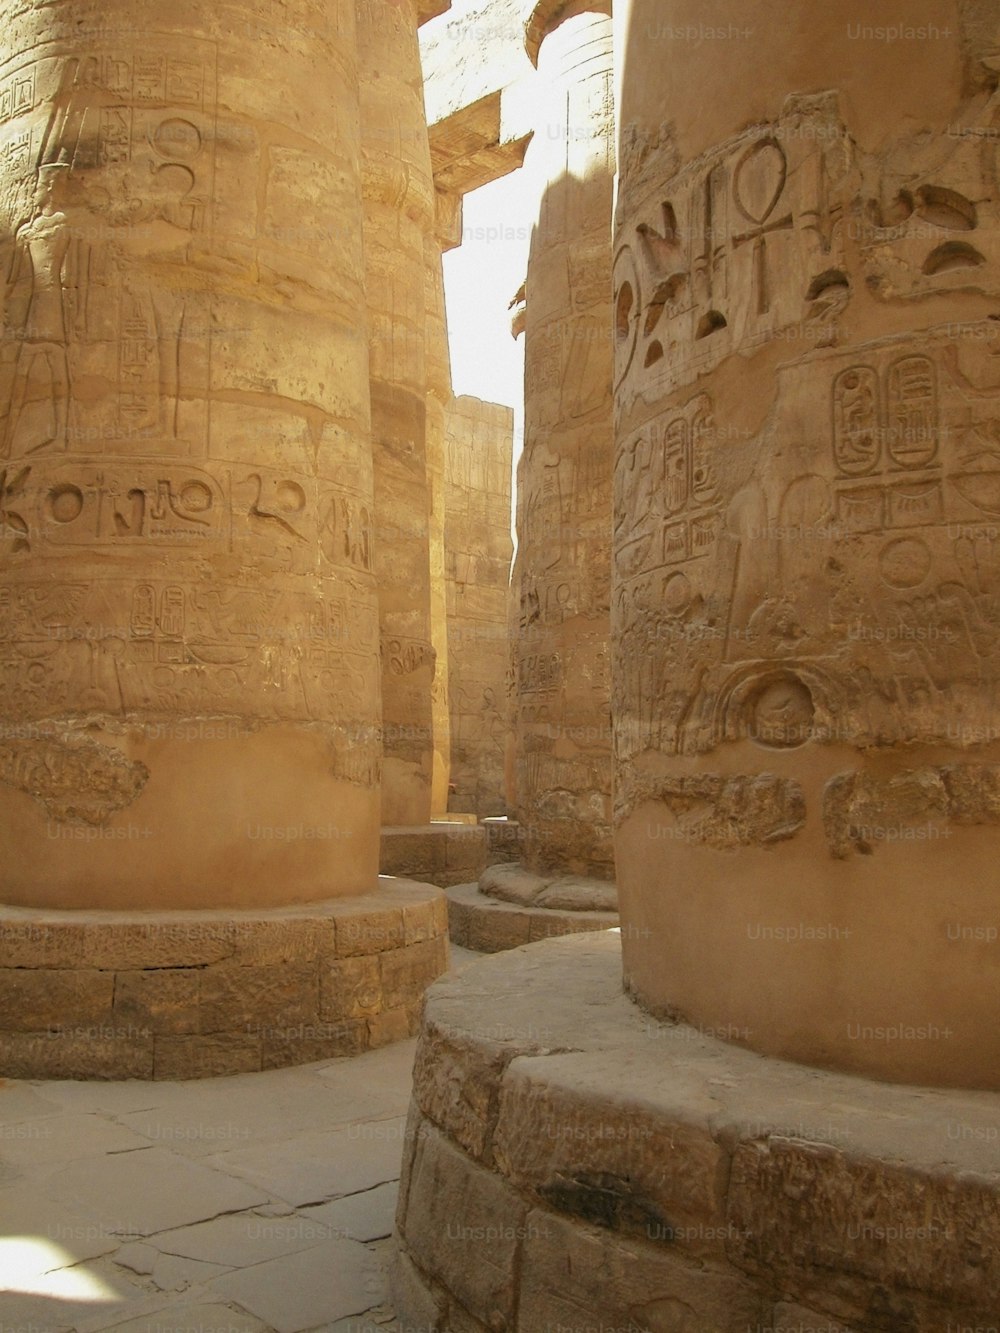 Las columnas del templo están talladas con escritura egipcia antigua